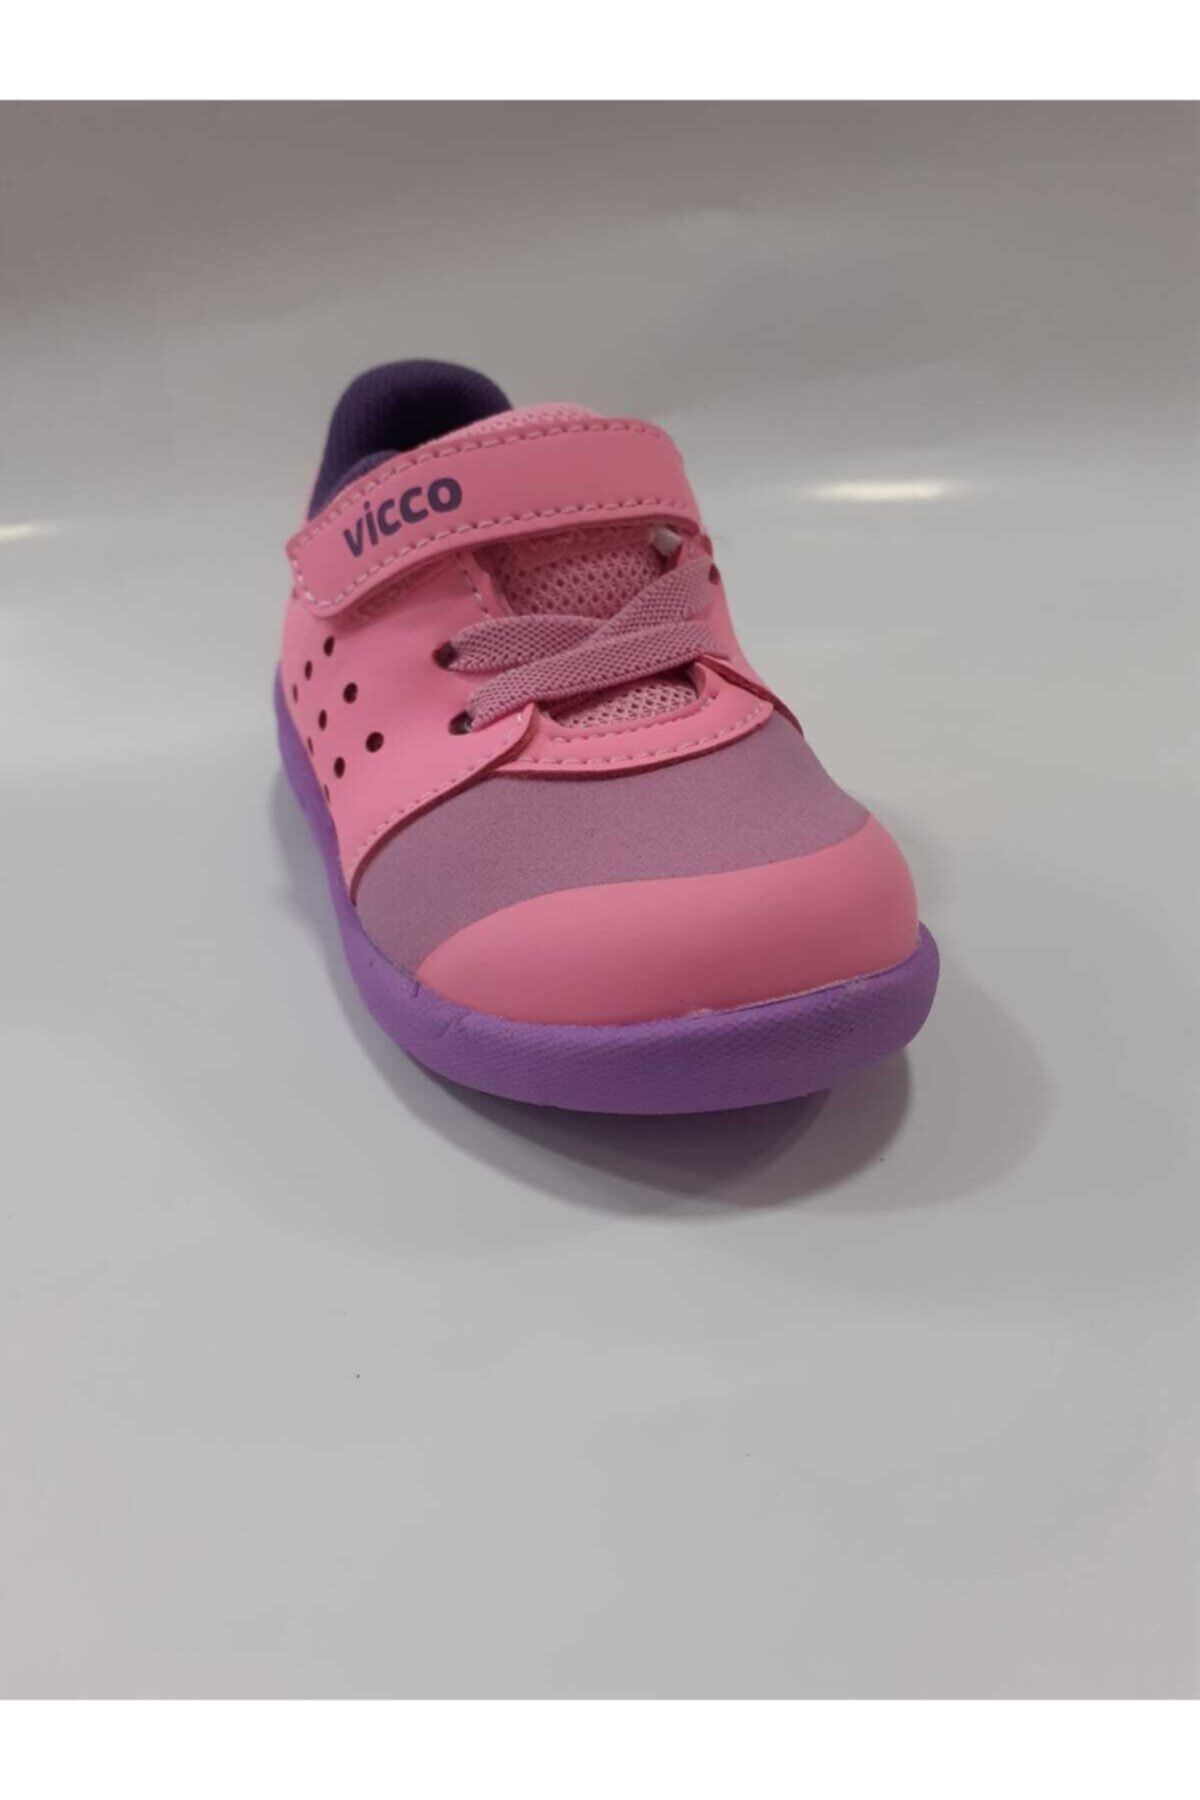 Vicco Bebek Spor Ayakkabı